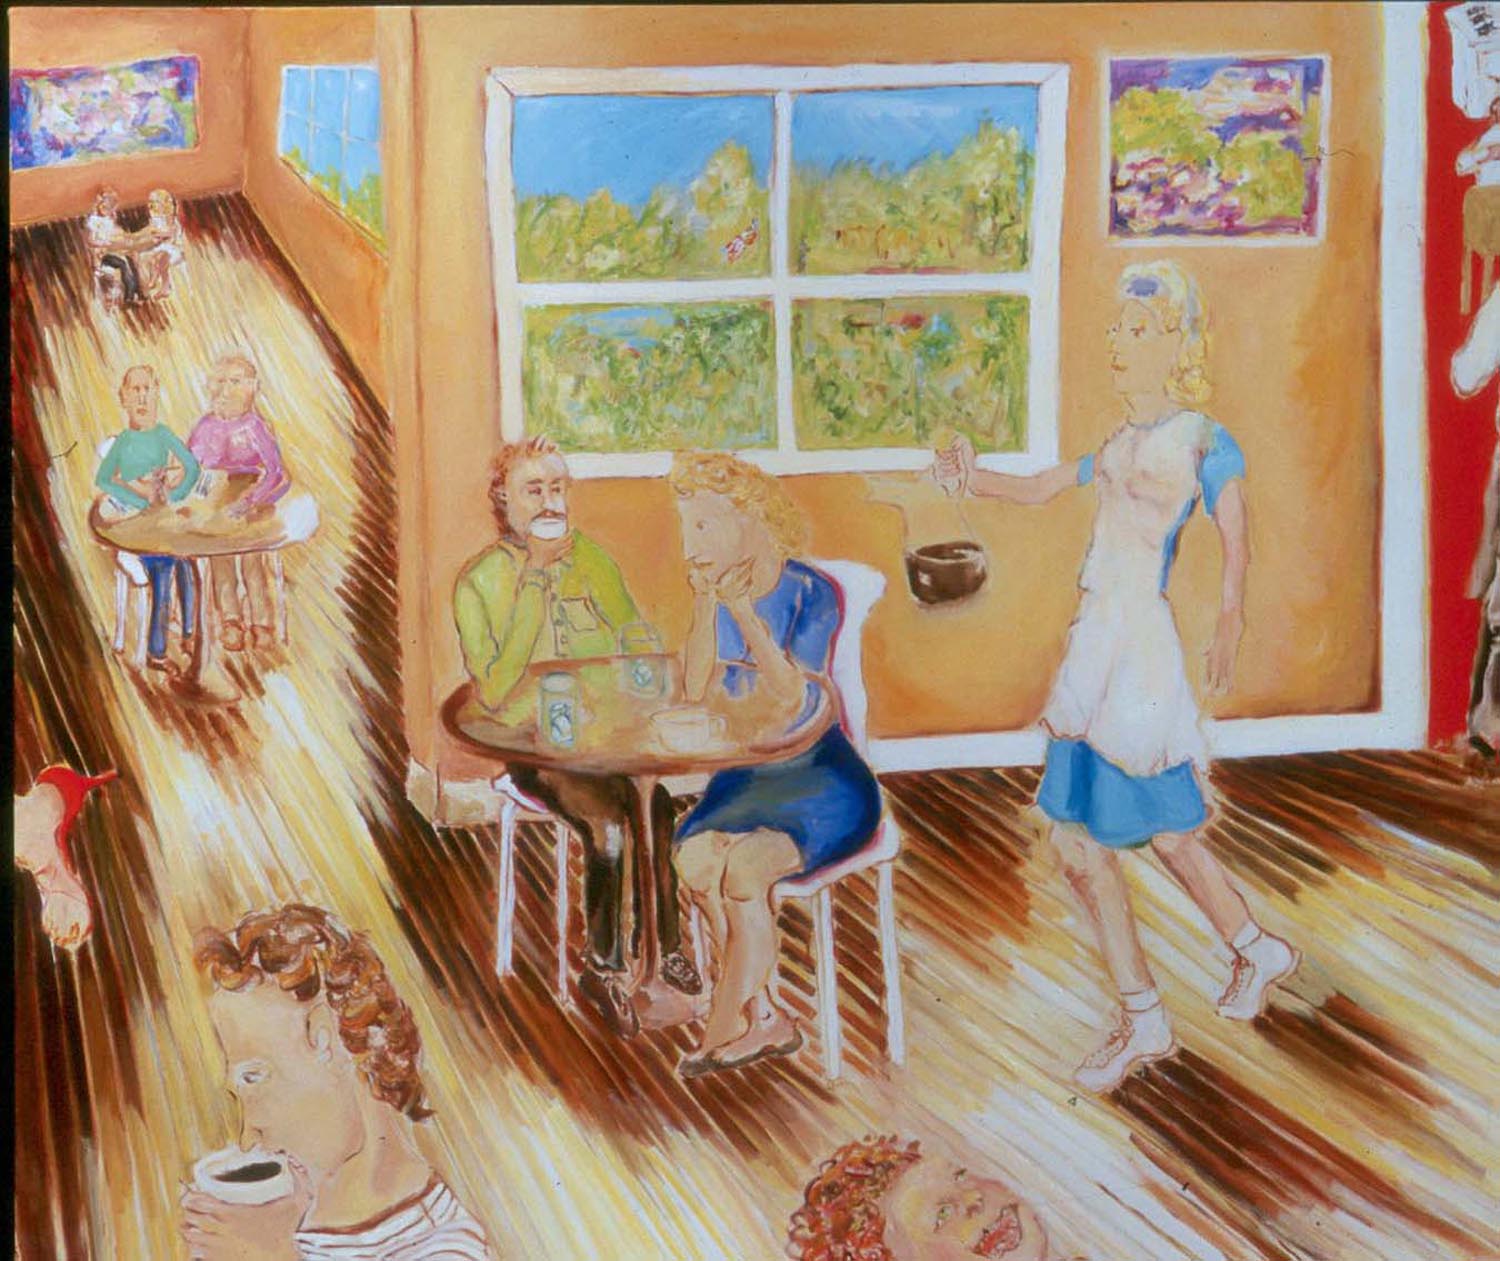 Café Society, oil on canvas, 60” x 72”, 2006